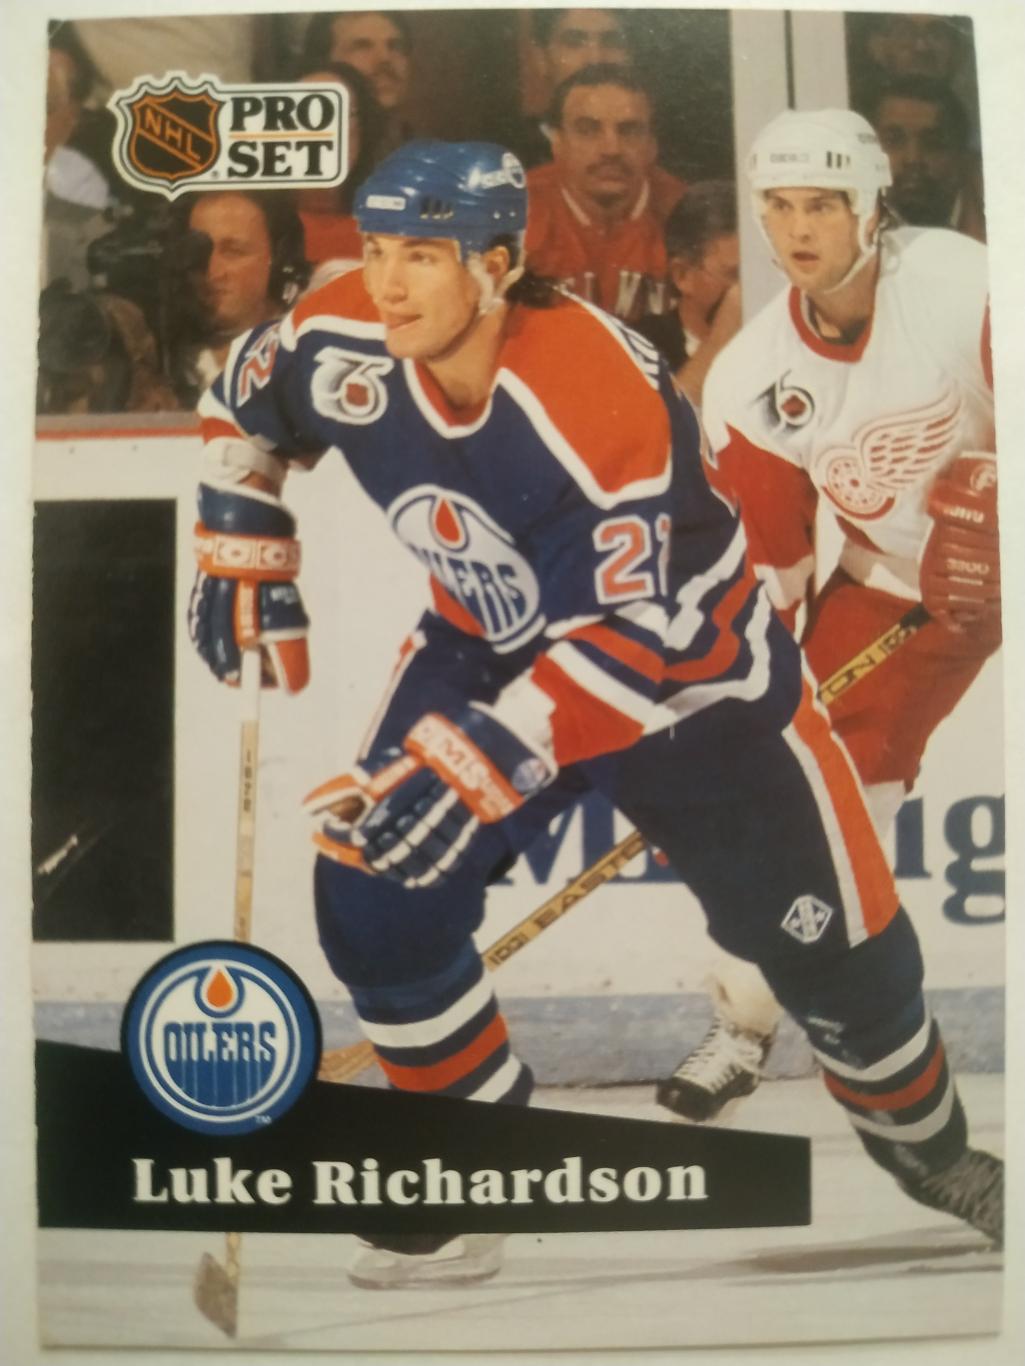 ХОККЕЙ КАРТОЧКА НХЛ PRO SET 1991 NHL LUKE RICHARDSON EDMONTON OILERS #387